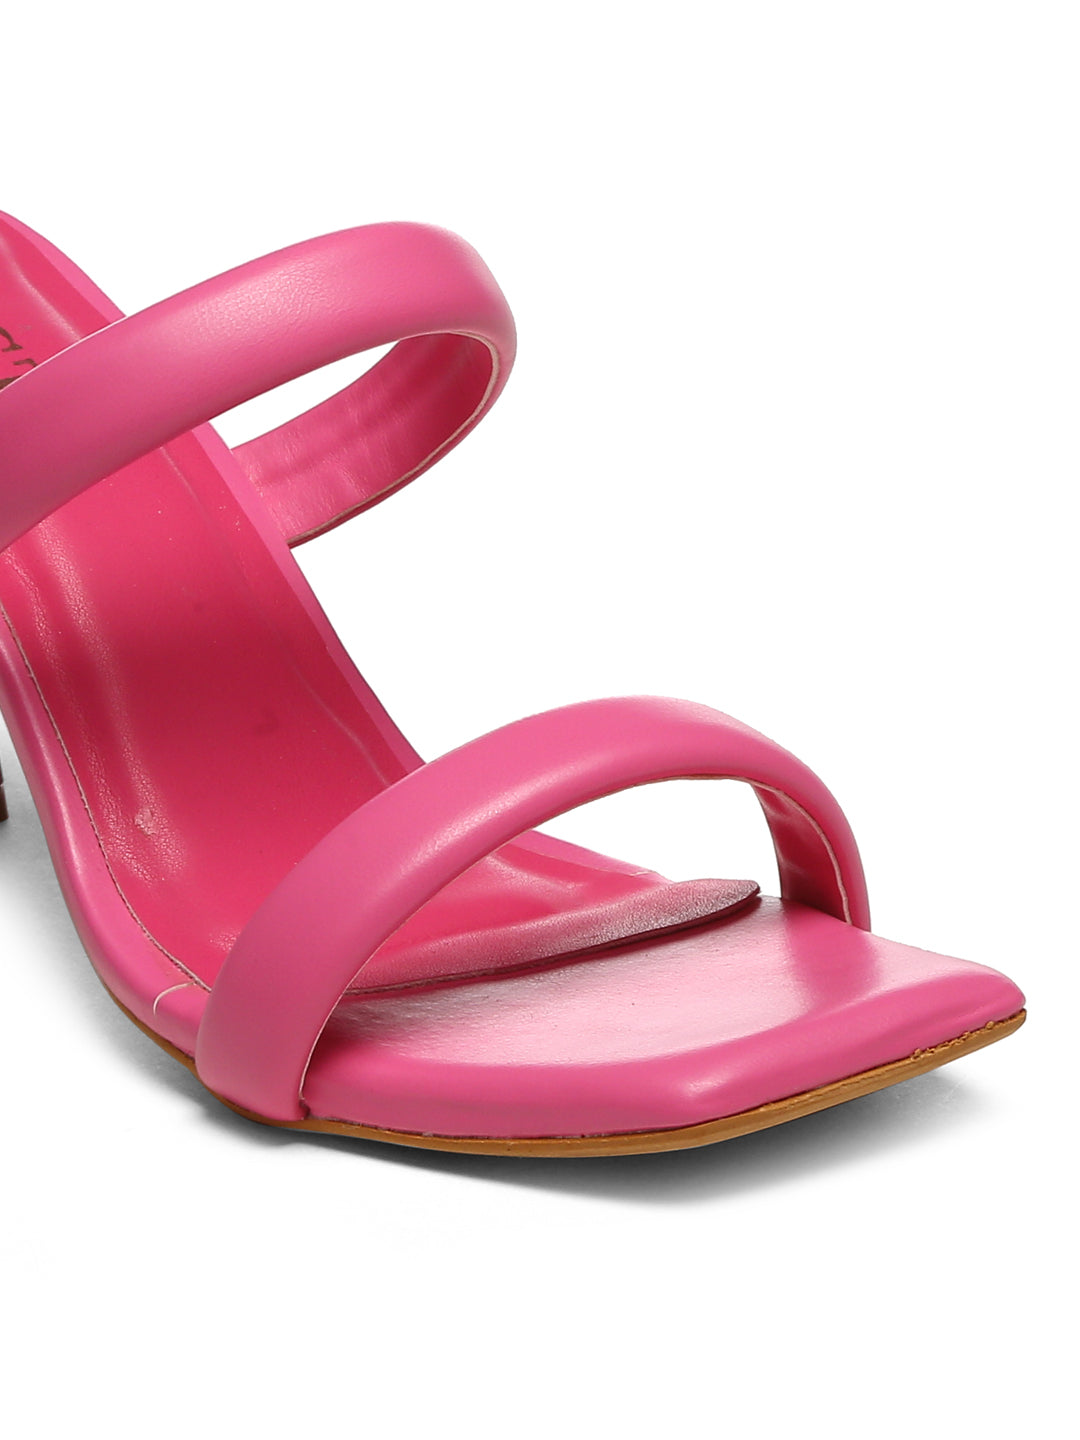 GNIST Hot Pink Quilted Strap Stilettos Heel